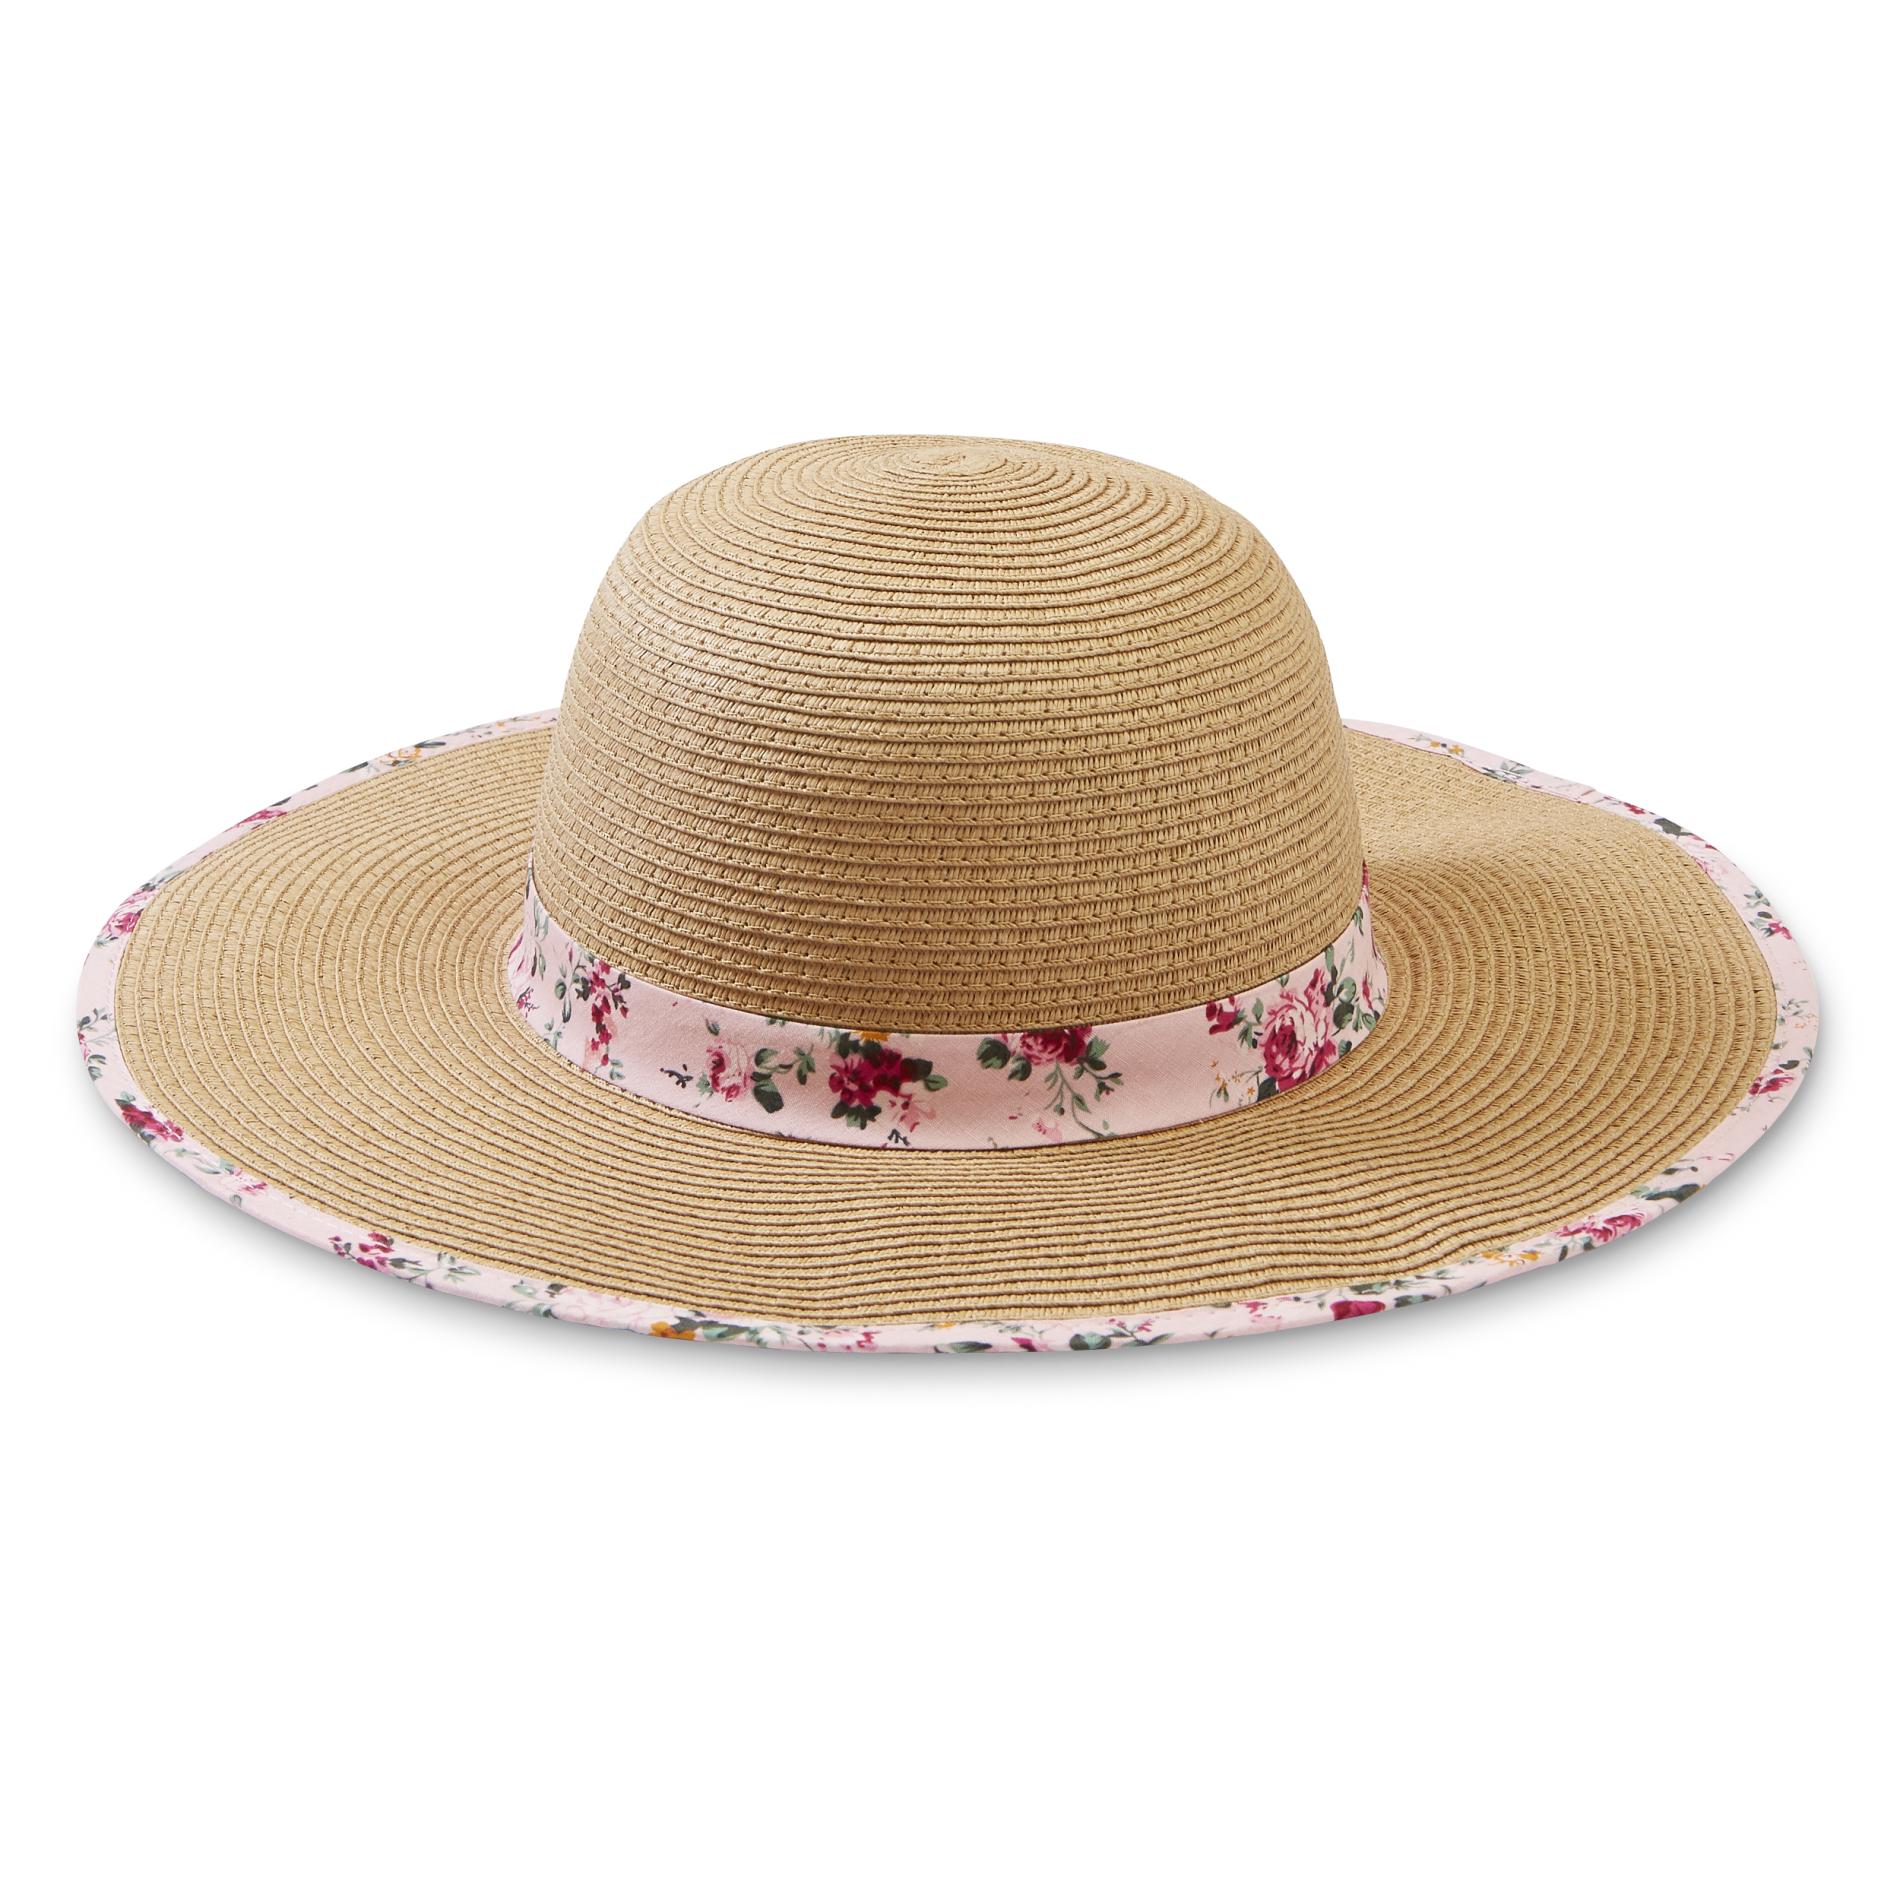 Women's Straw Floppy Hat - Floral